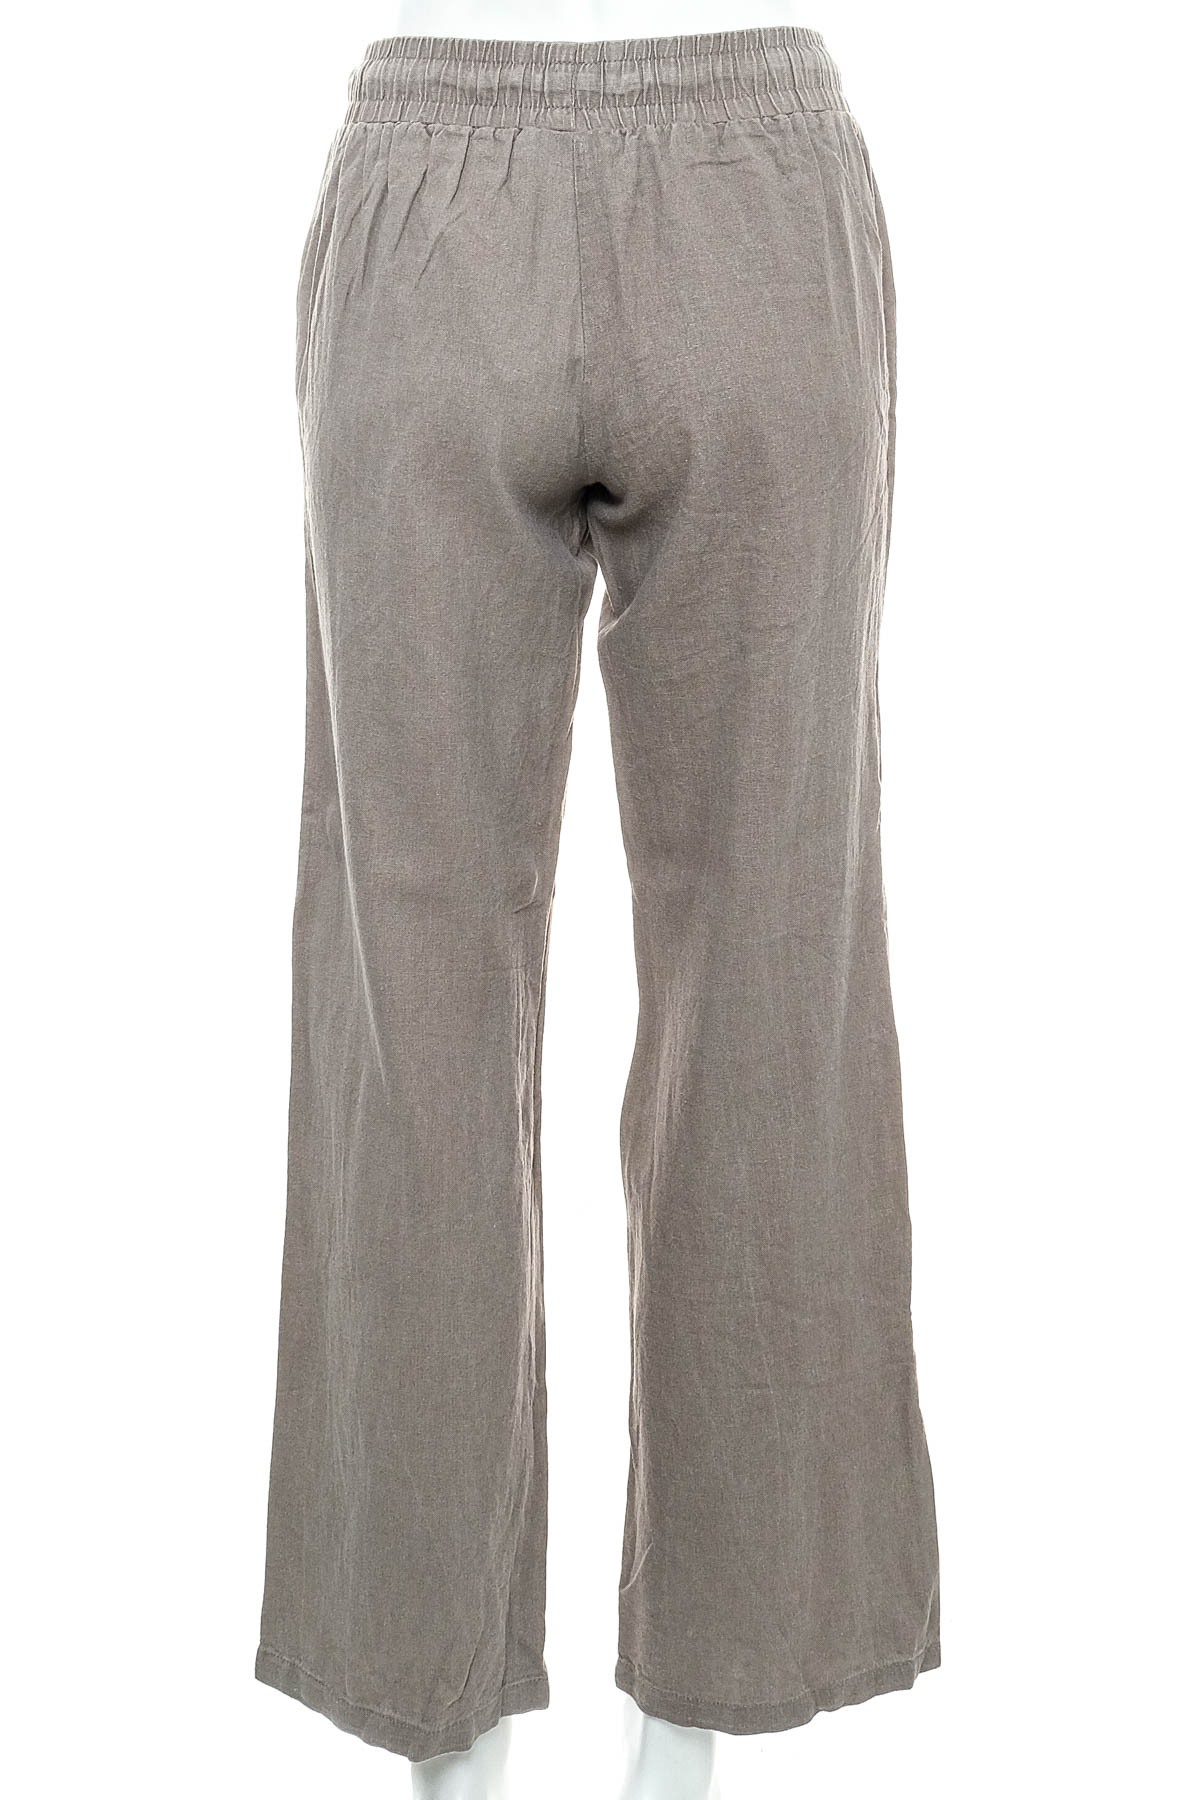 Women's trousers - Esmara - 1